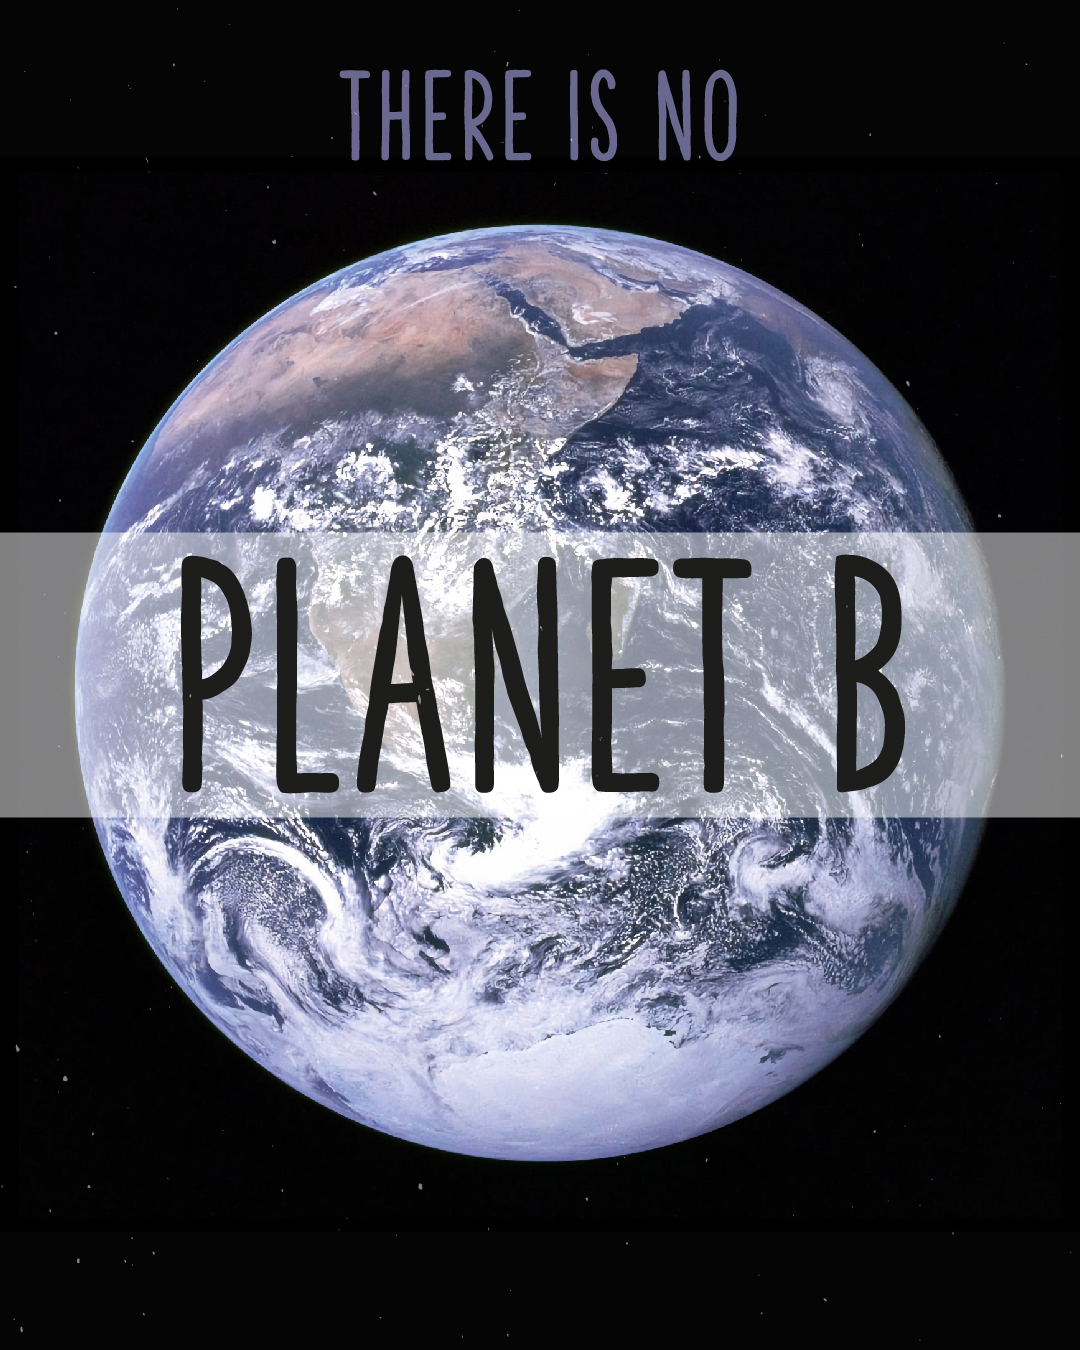 Erdkugel auf schwarzem Hintergrund. Text in der Mitte: Planet B